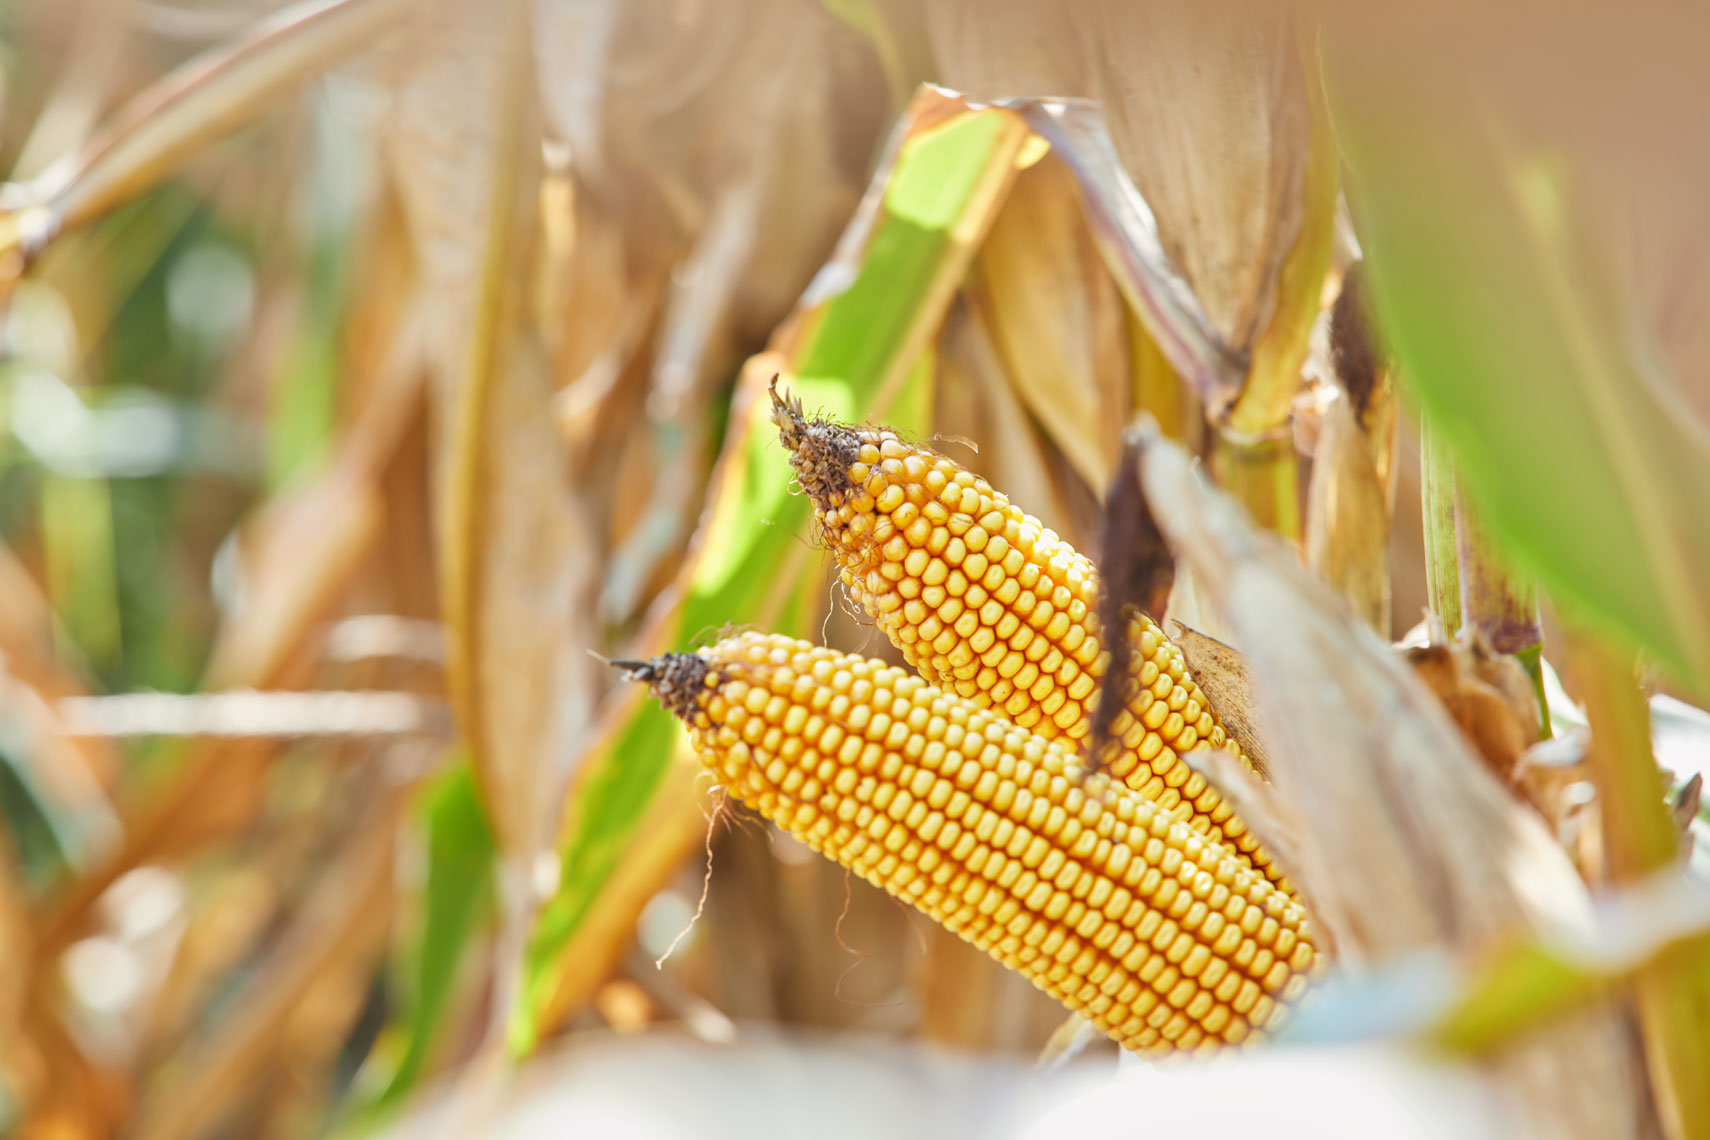 Corn/ears/crop/farm/agricultural photography